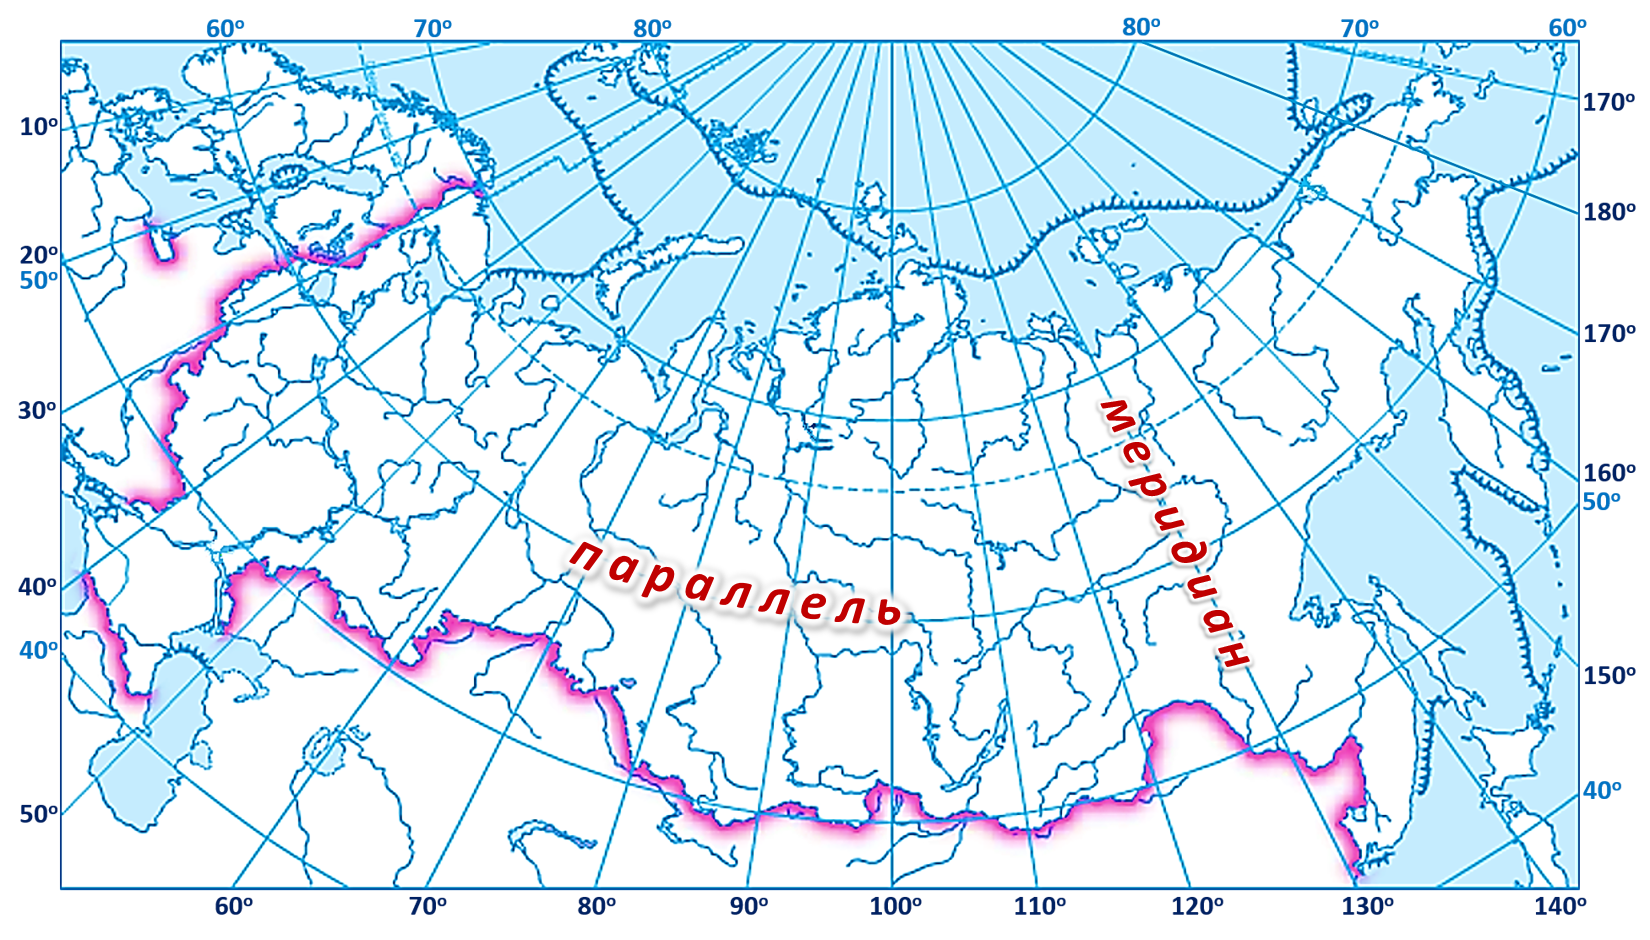 60 градусов с ш. 60 Параллель 60 Меридиан на карте. Карта России с широтой и долготой и городами. Широта 60 градусов на карте России.